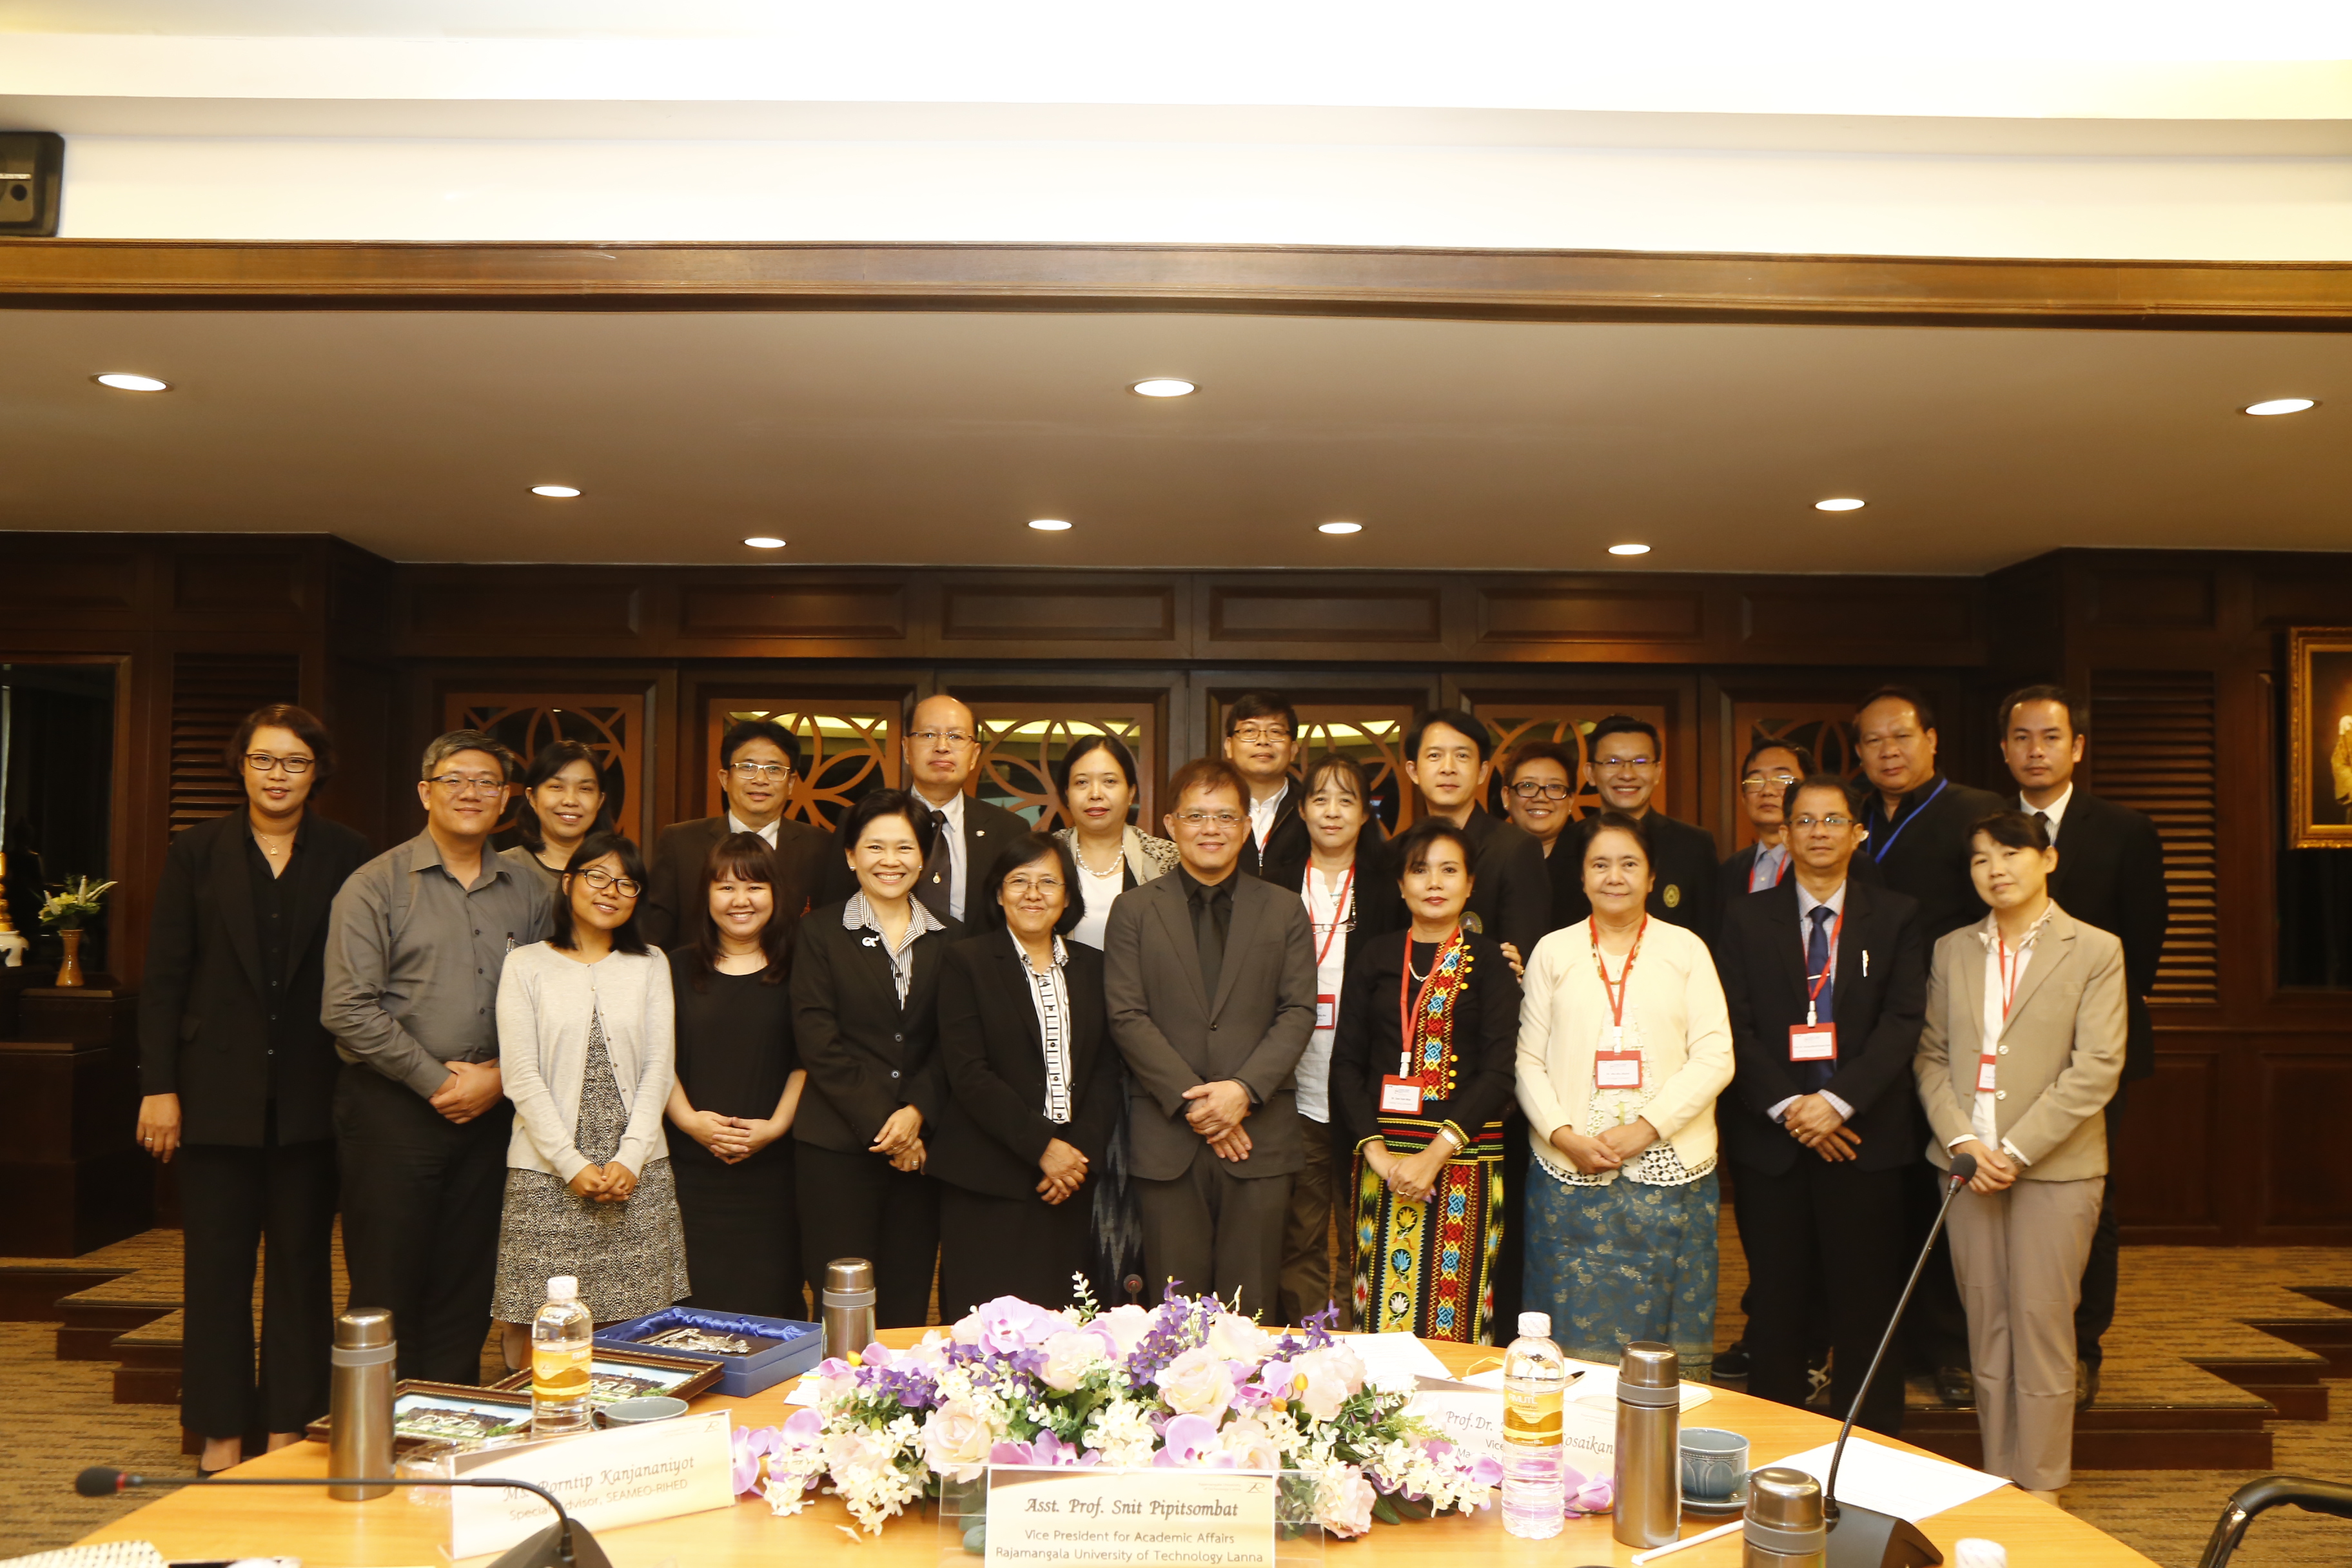 ต้อนรับผู้เข้าร่วมโครงการ Myanmar - Thailand Higher Education Institutions Leadership Development and Networking Programme